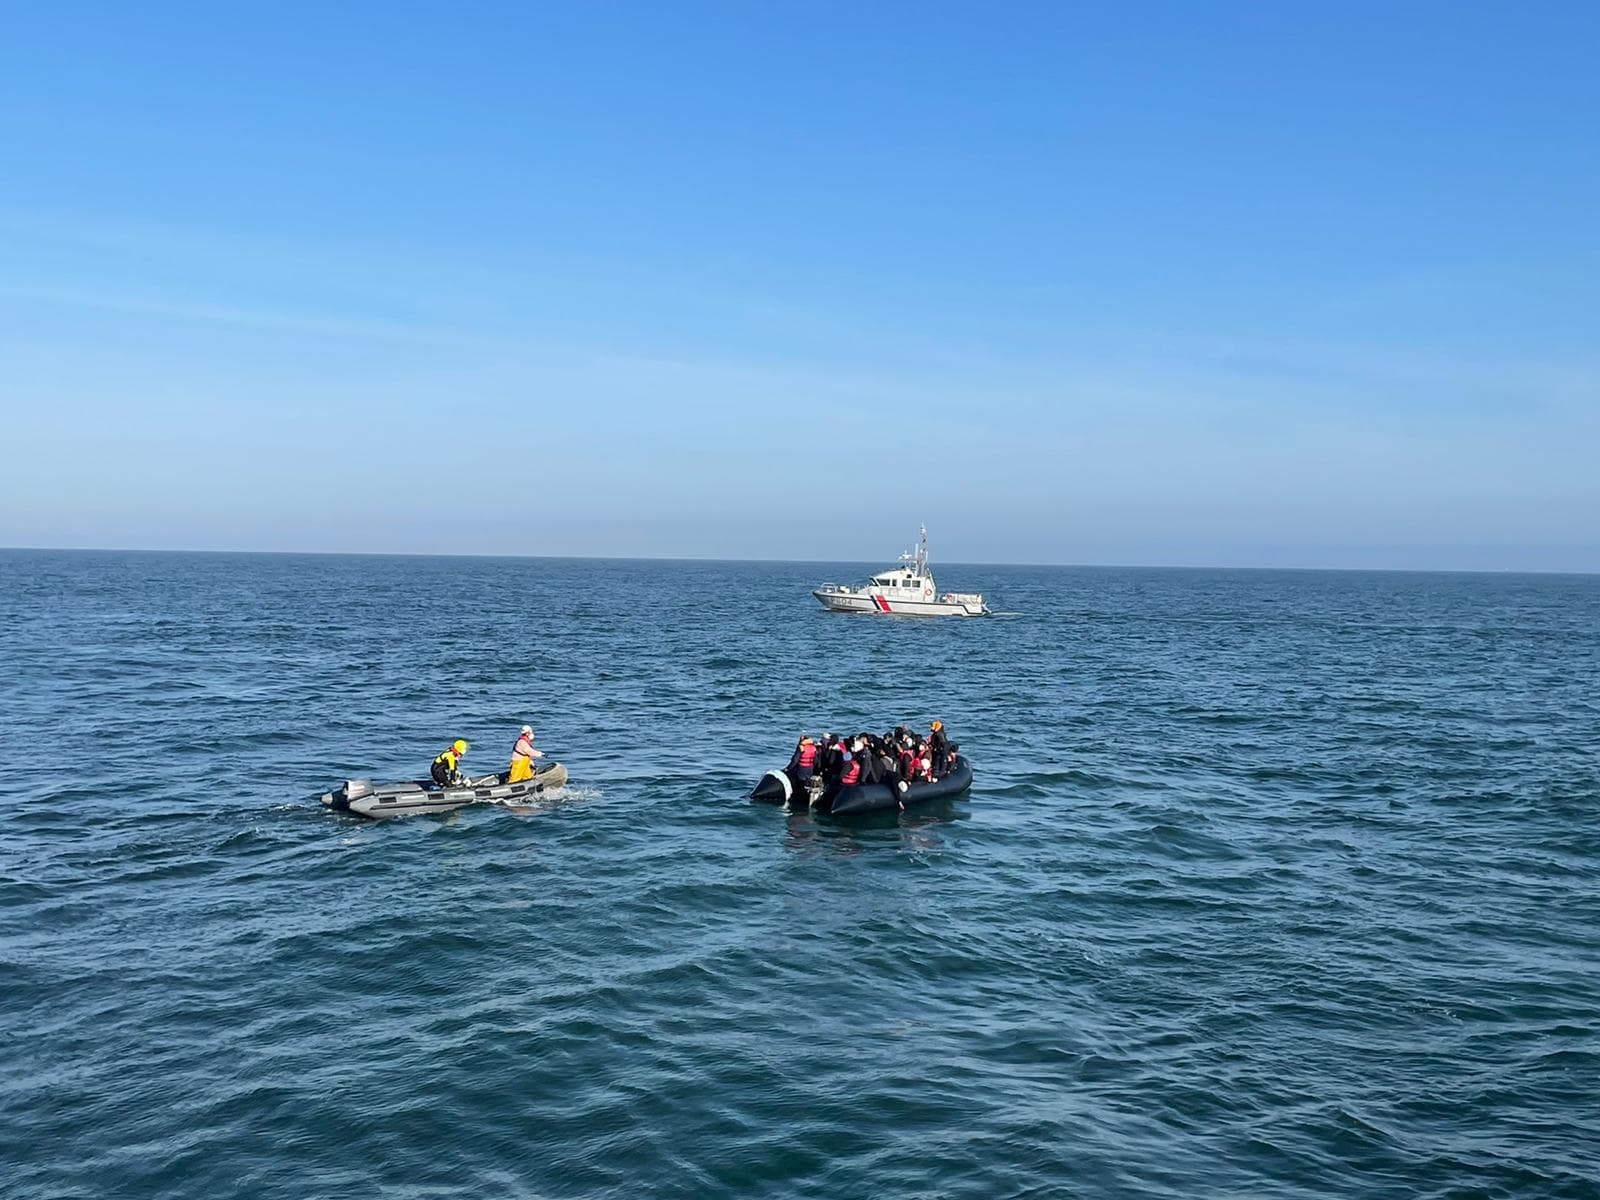 traversée de la manche: 78 migrants en difficulté secourus dans le détroit du pas-de-calais